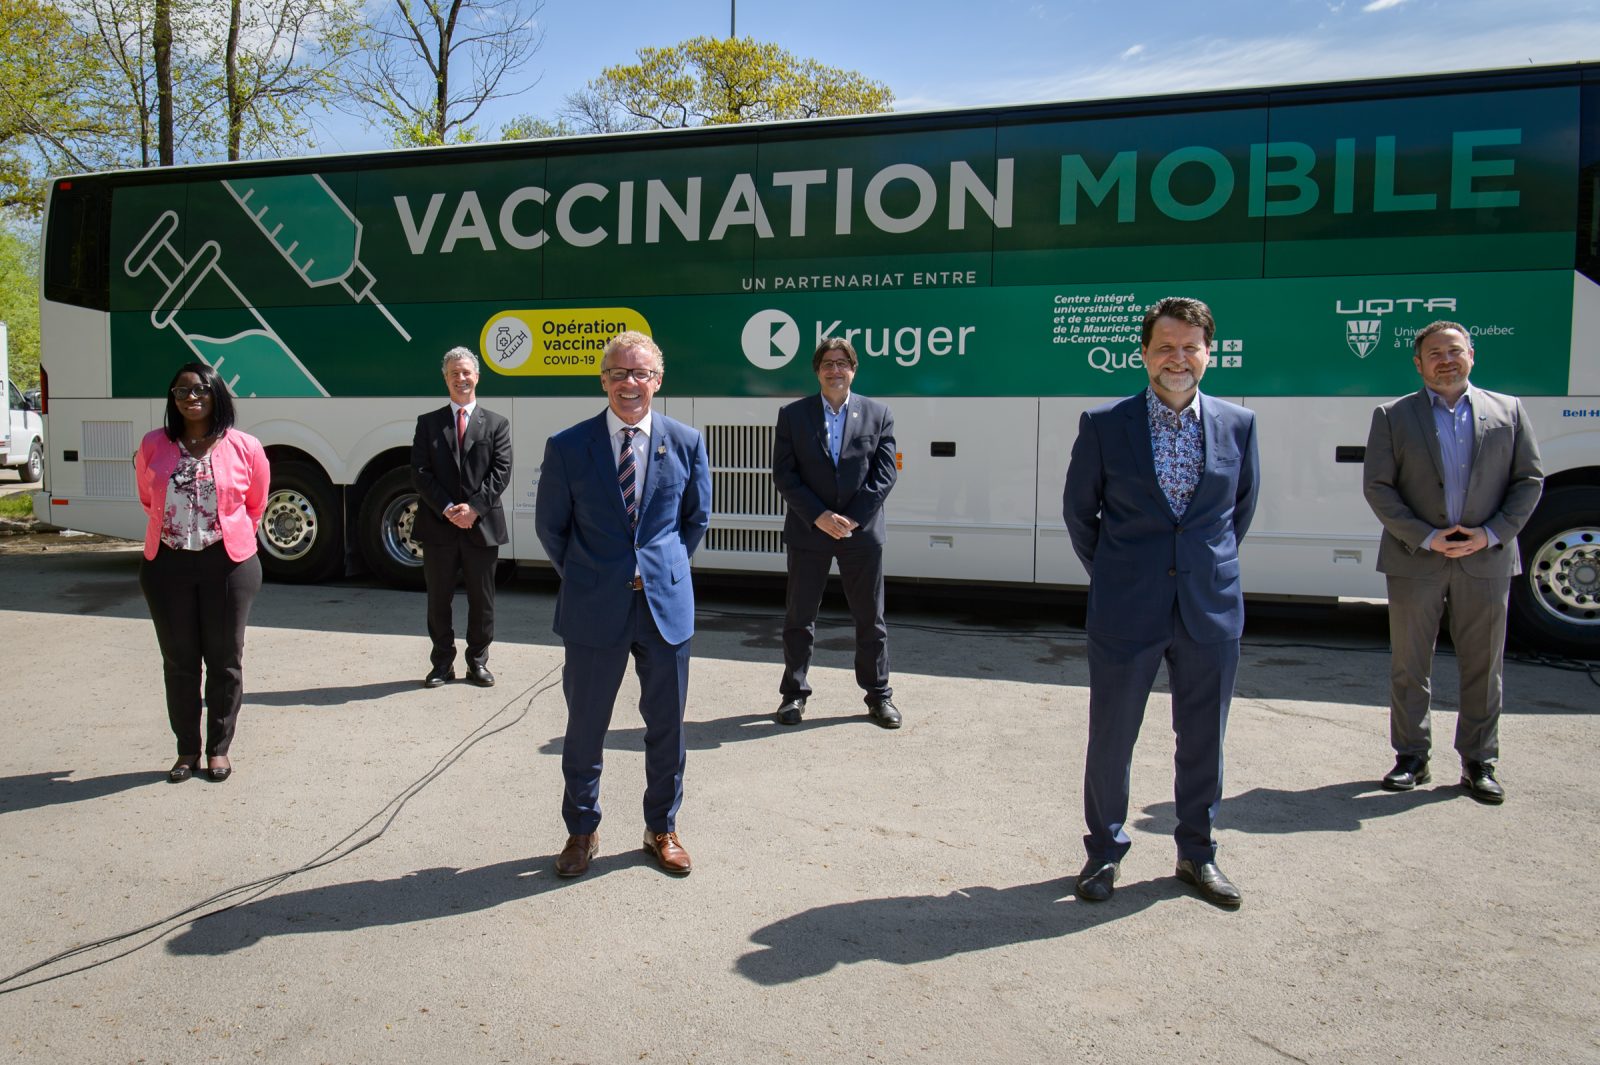 La clinique mobile permet la vaccination de 2577 personnes en un mois